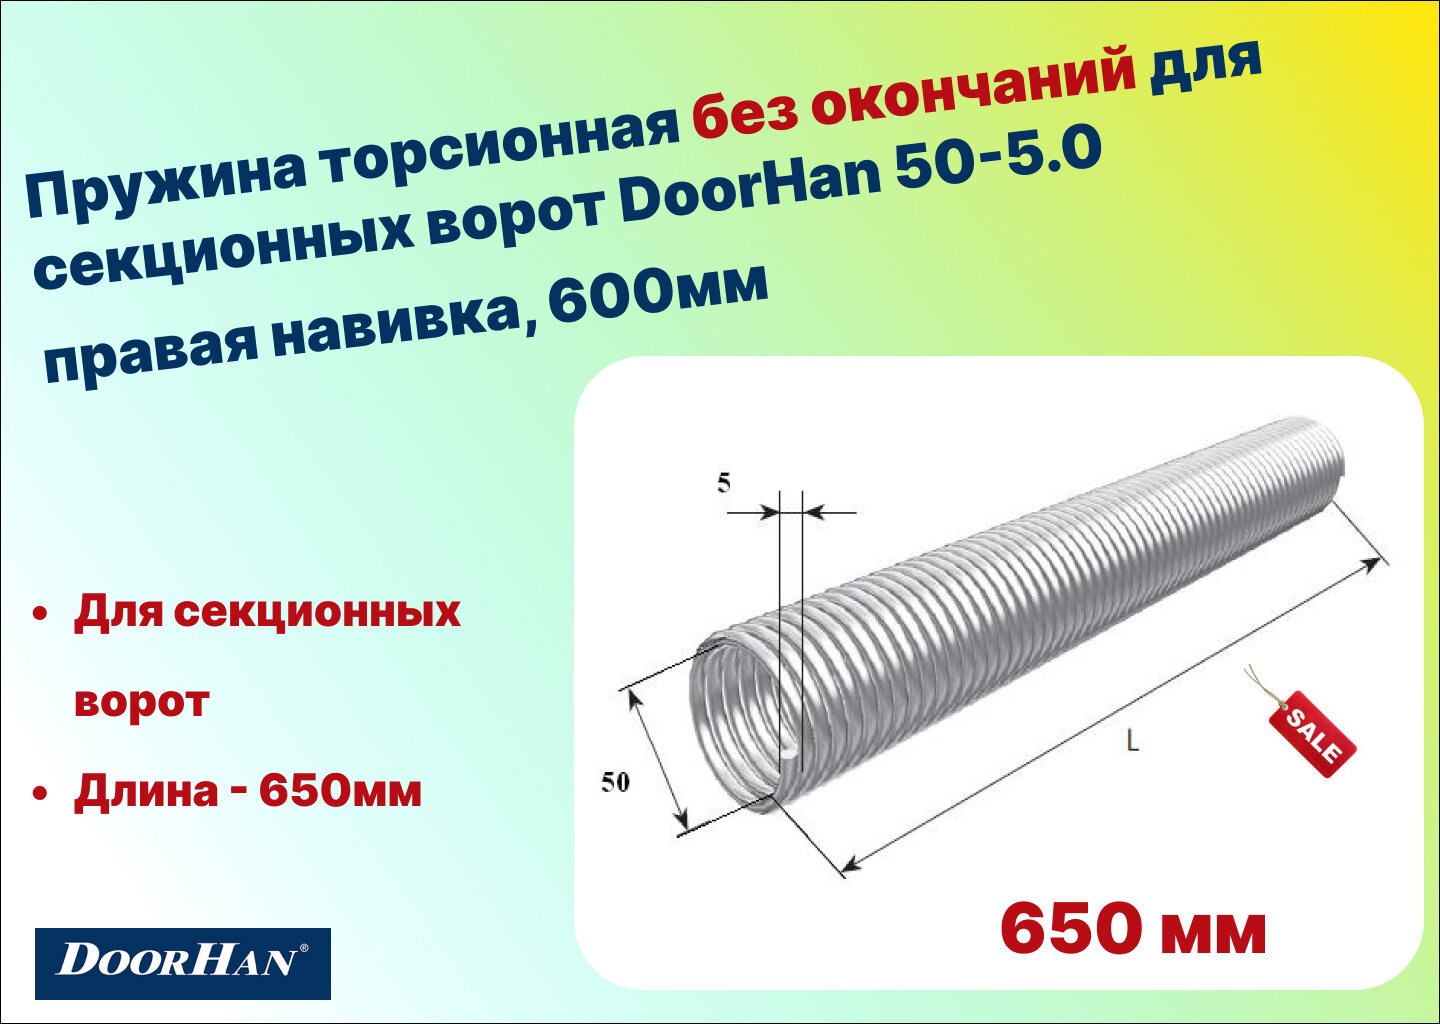 Пружина торсионная без окончаний для секционных ворот DoorHan 50-5.0 правая навивка длина 650 мм (32050/mR/RAL7004)